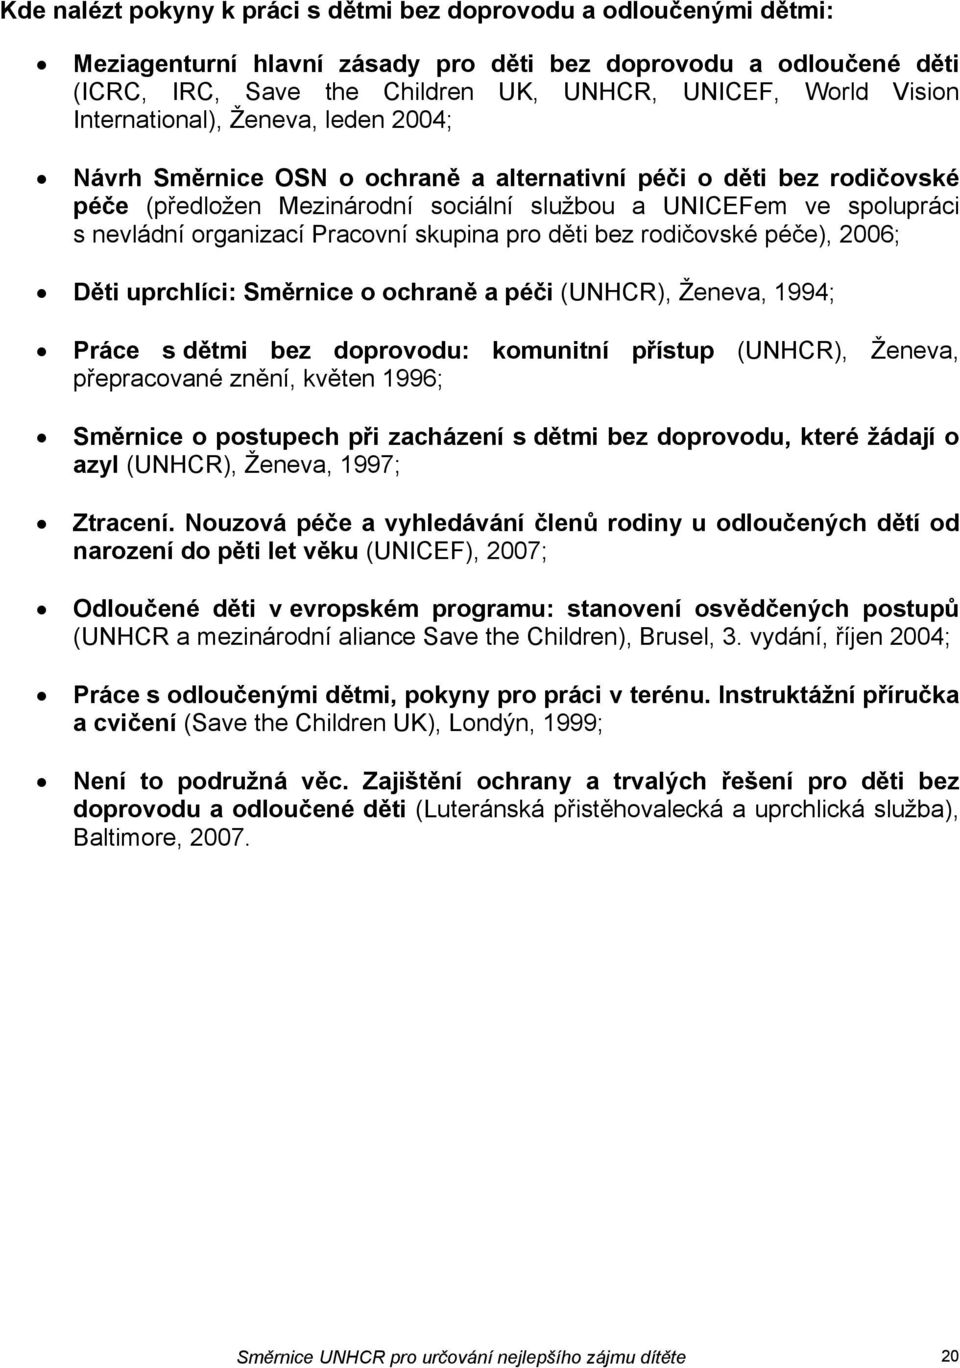 Pracovní skupina pro děti bez rodičovské péče), 2006; Děti uprchlíci: Směrnice o ochraně a péči (UNHCR), Ženeva, 1994; Práce s dětmi bez doprovodu: komunitní přístup (UNHCR), Ženeva, přepracované